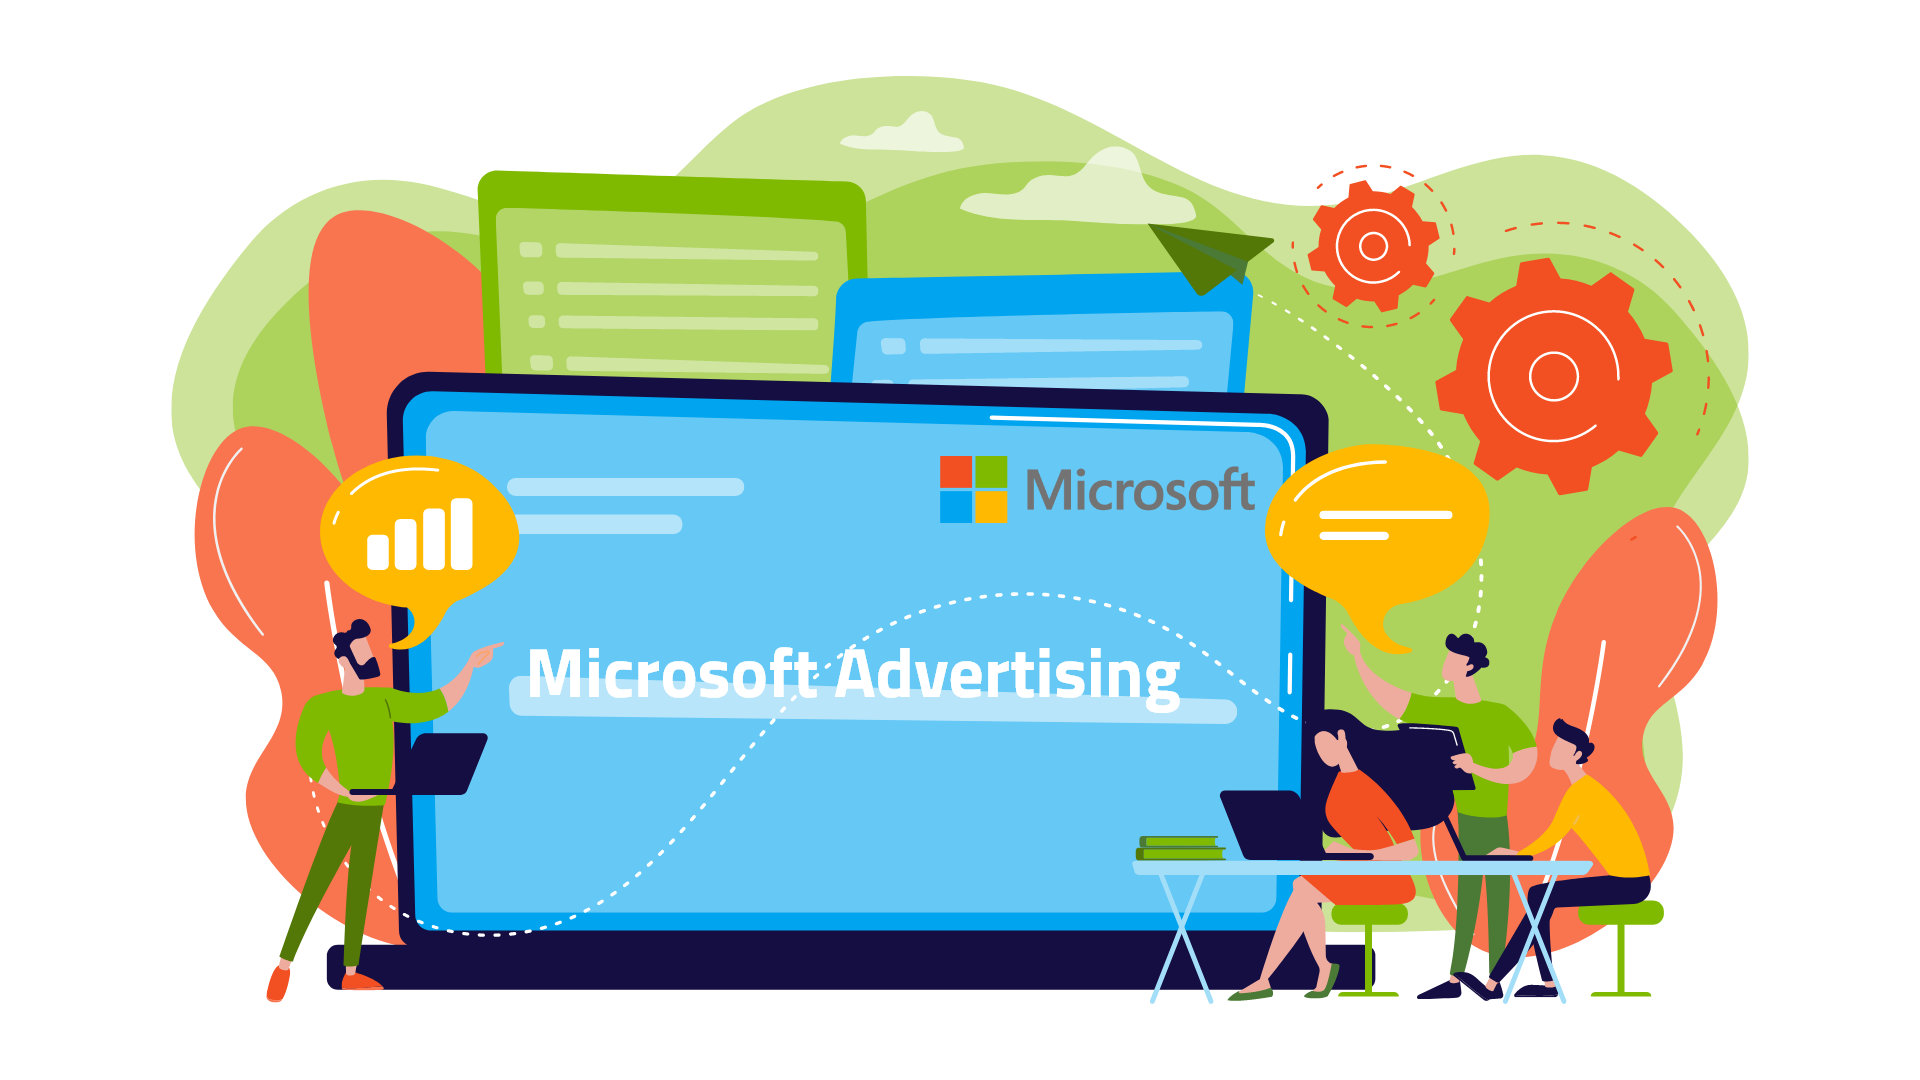 Suchmaschinenwerbung mit Microsoft Advertising